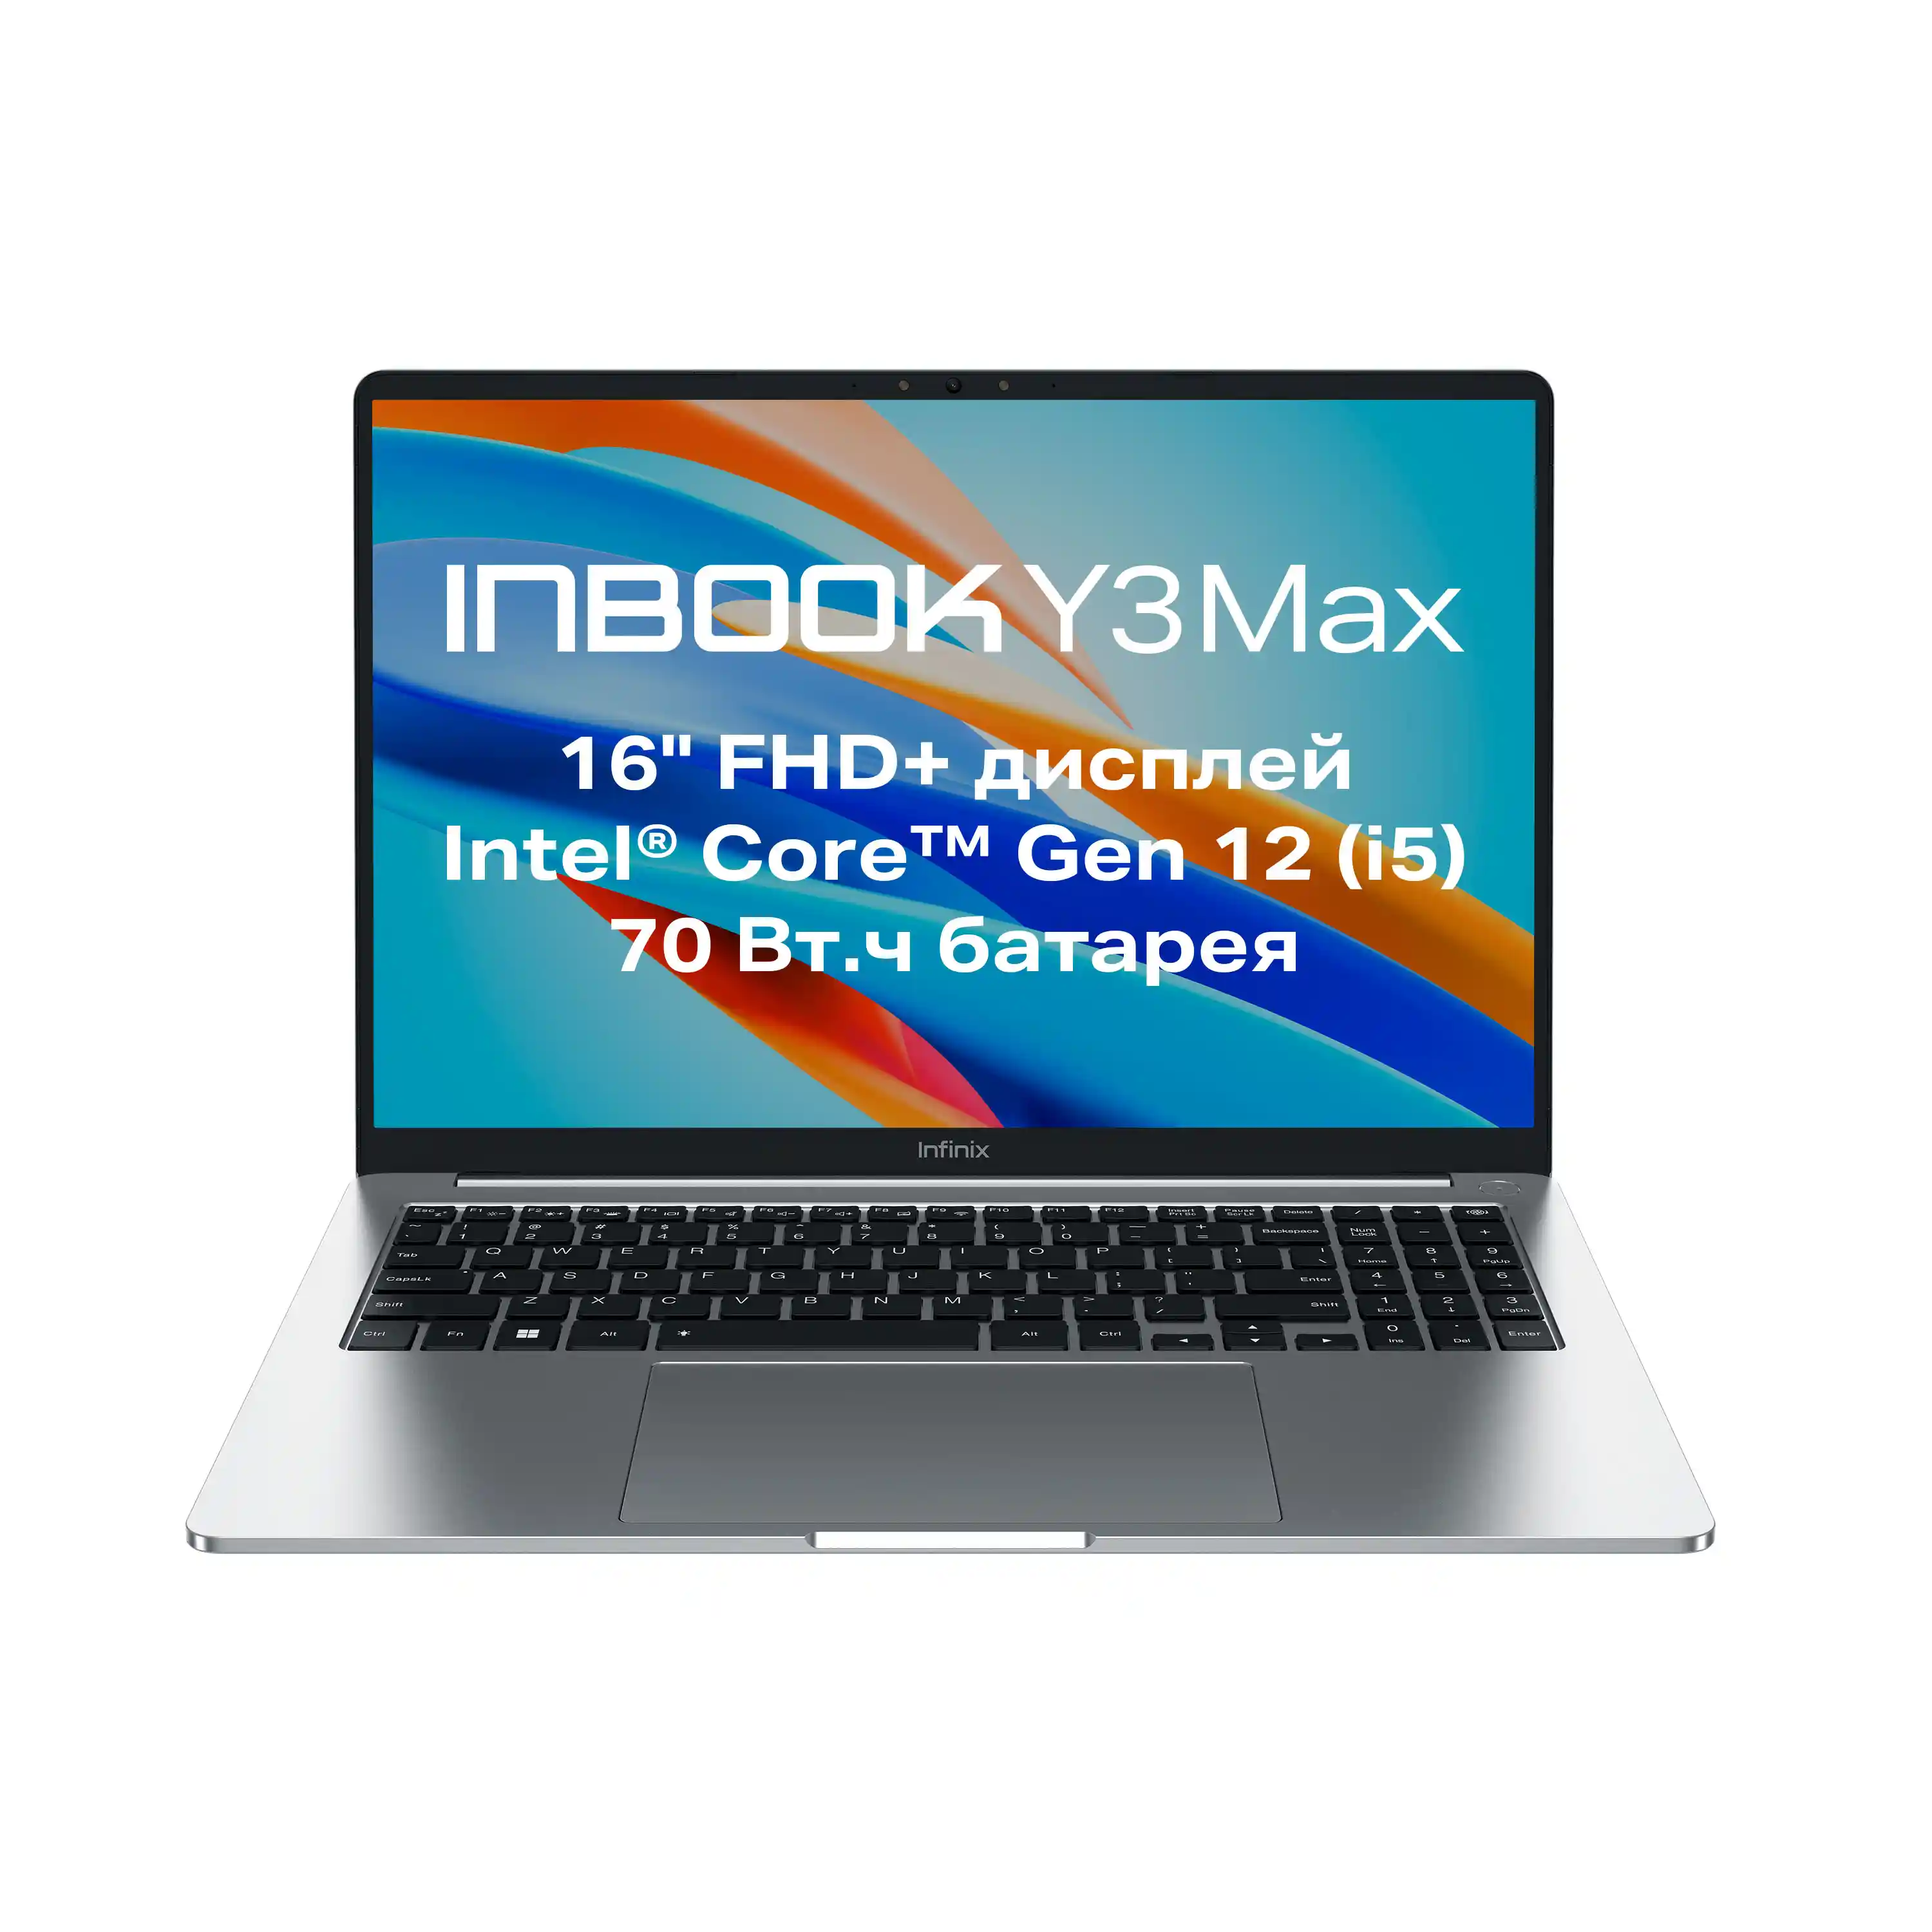 Ноутбук INFINIX Inbook Y3 Max YL613 16" (71008301570)